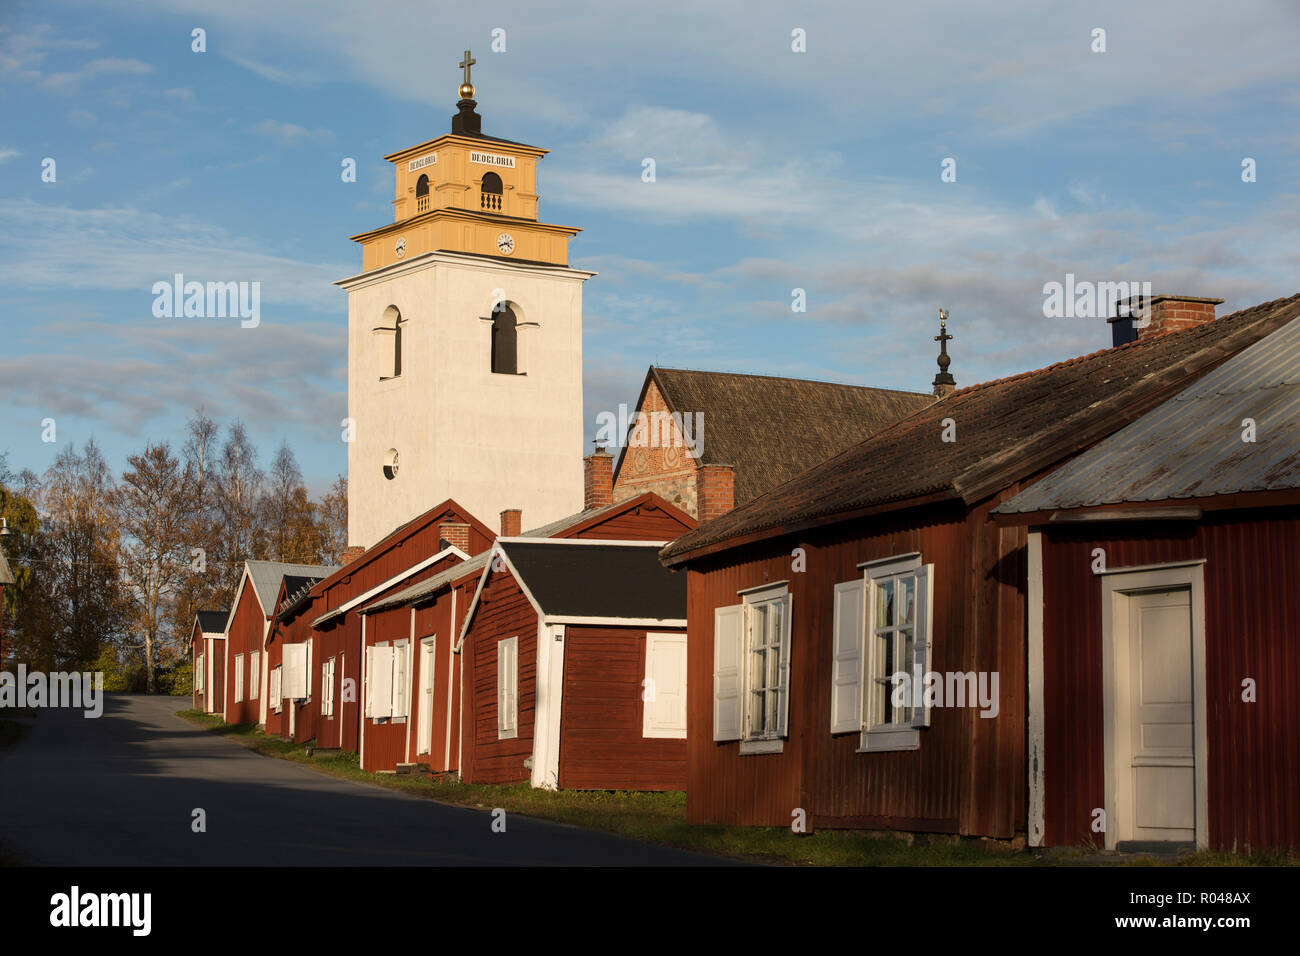 Gammelstad chiesa cittadina in Lulea in Lapponia svedese, elencato come un centro per il Patrimonio Mondiale dell'Unesco, Svezia settentrionale e Scandinavia Foto Stock